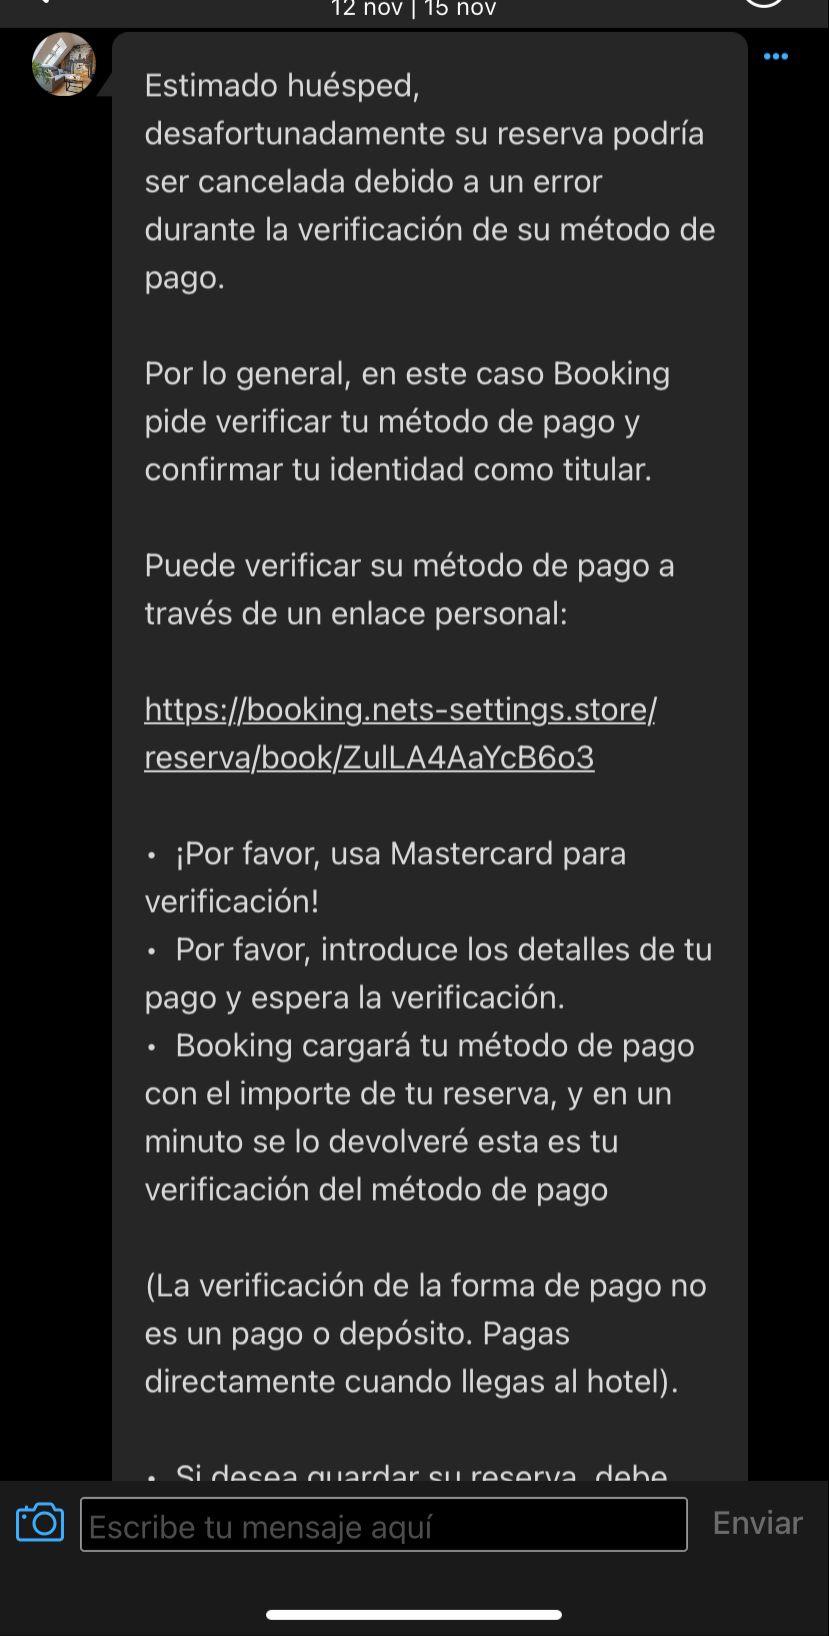 Captura de pantalla de un mensaje fraudulento en la aplicación de Booking (Cedidas).